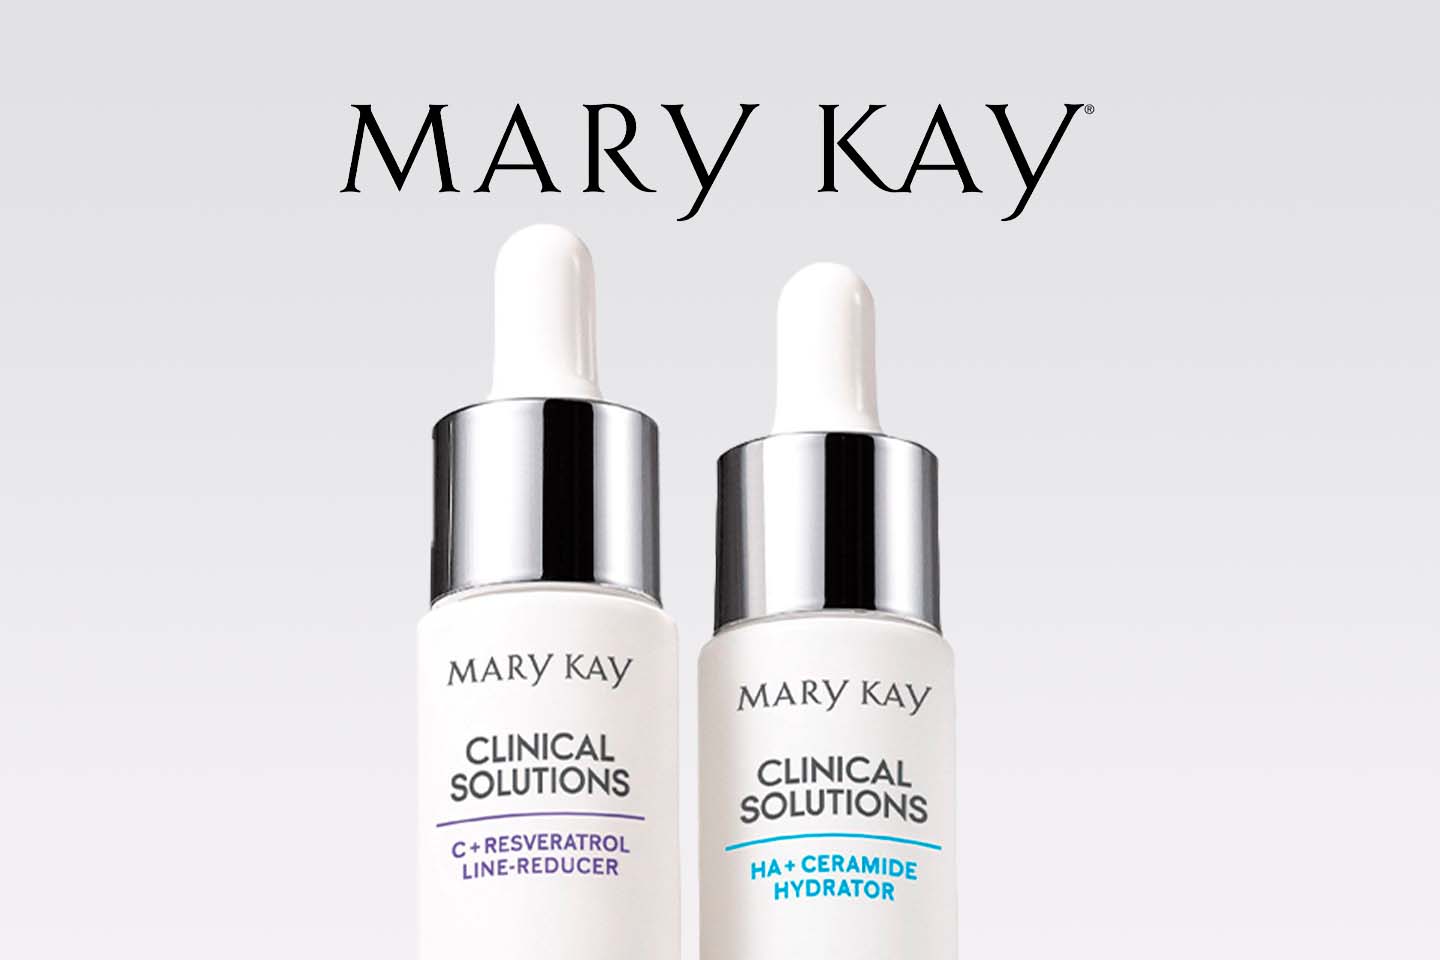 Dwa produkty do pielęgnacji skóry firmy Mary Kay 